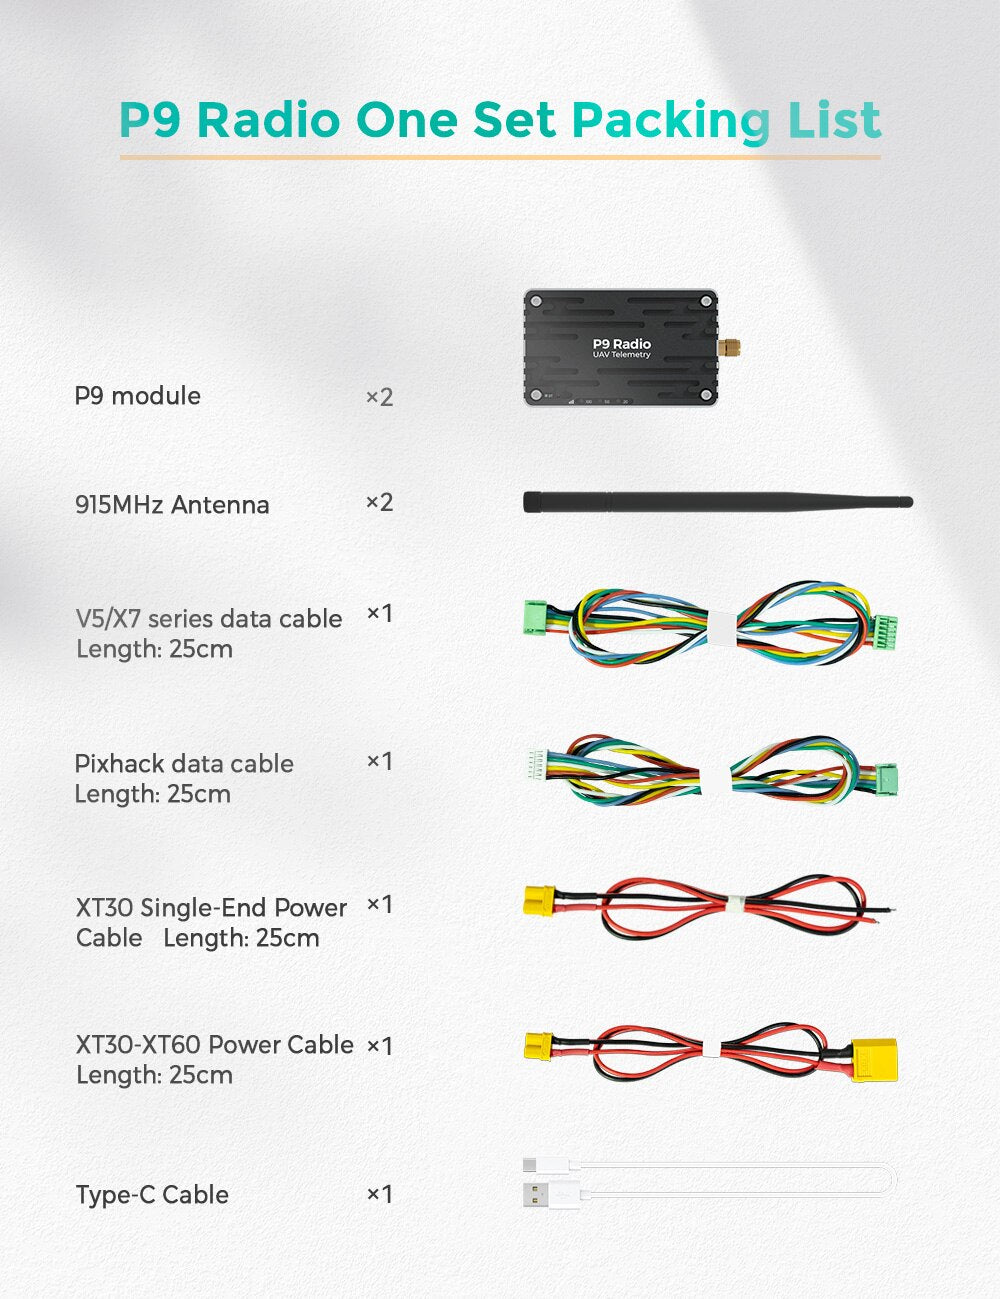 CUAV P9 Radio Telemetry, CUAV RC FPV Data Transmission, XT3O-XT6O Power Cable x1 Length: